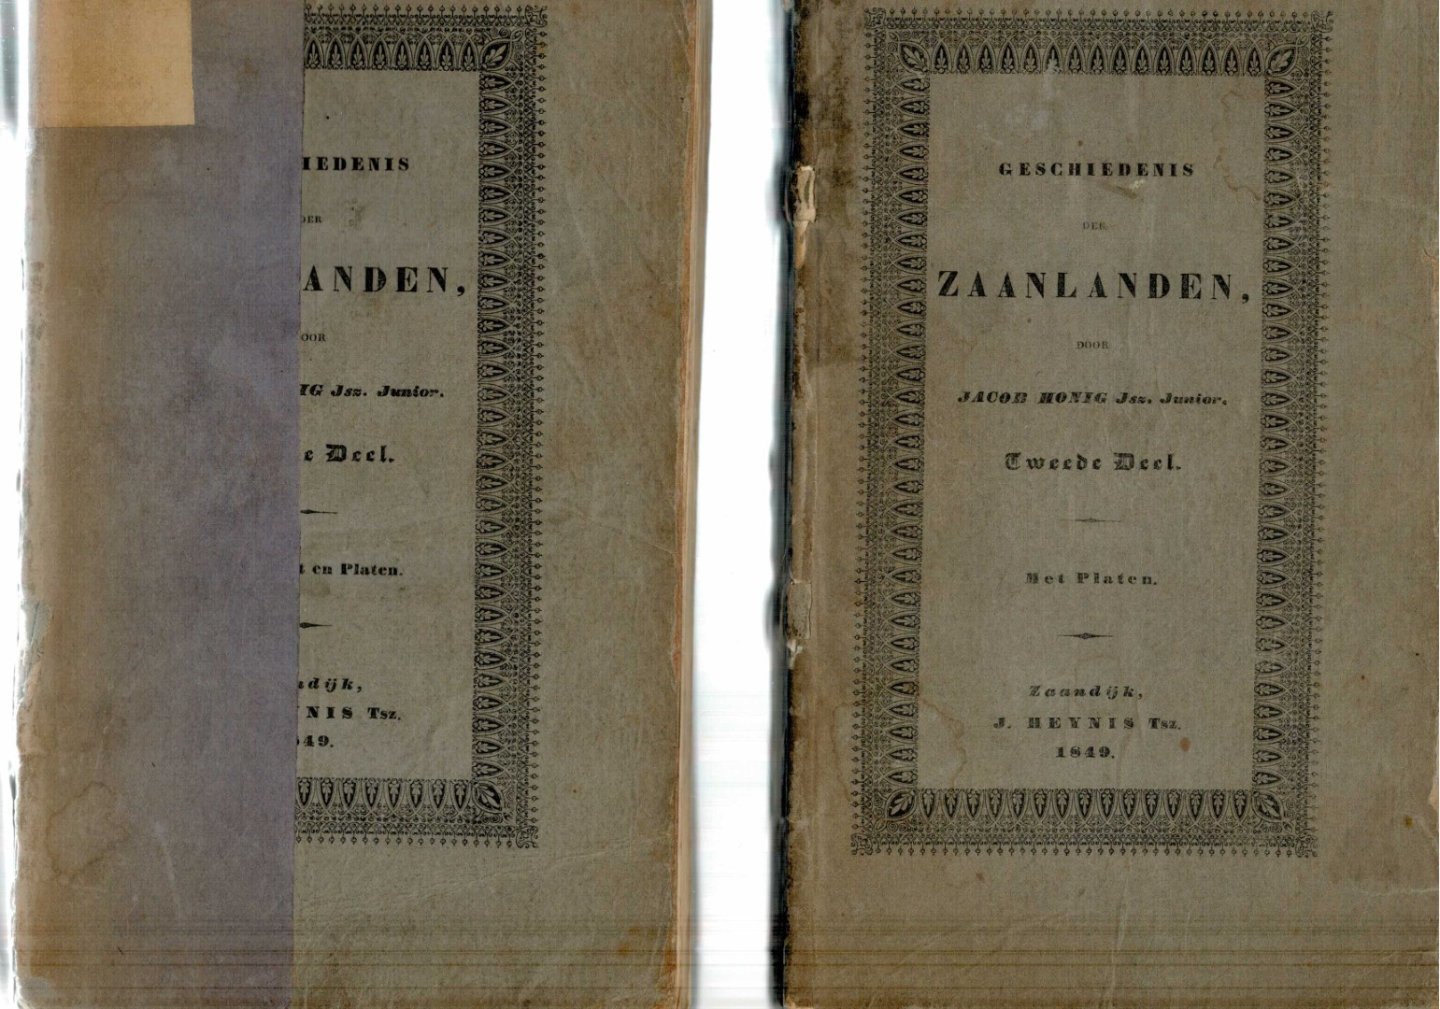 Honig, Jacob Jsz. Junior - Geschiedenis der Zaanlanden Deel 1 en Deel 2 door jacob Honig Jsz Junior (1849) met platen eerste druk